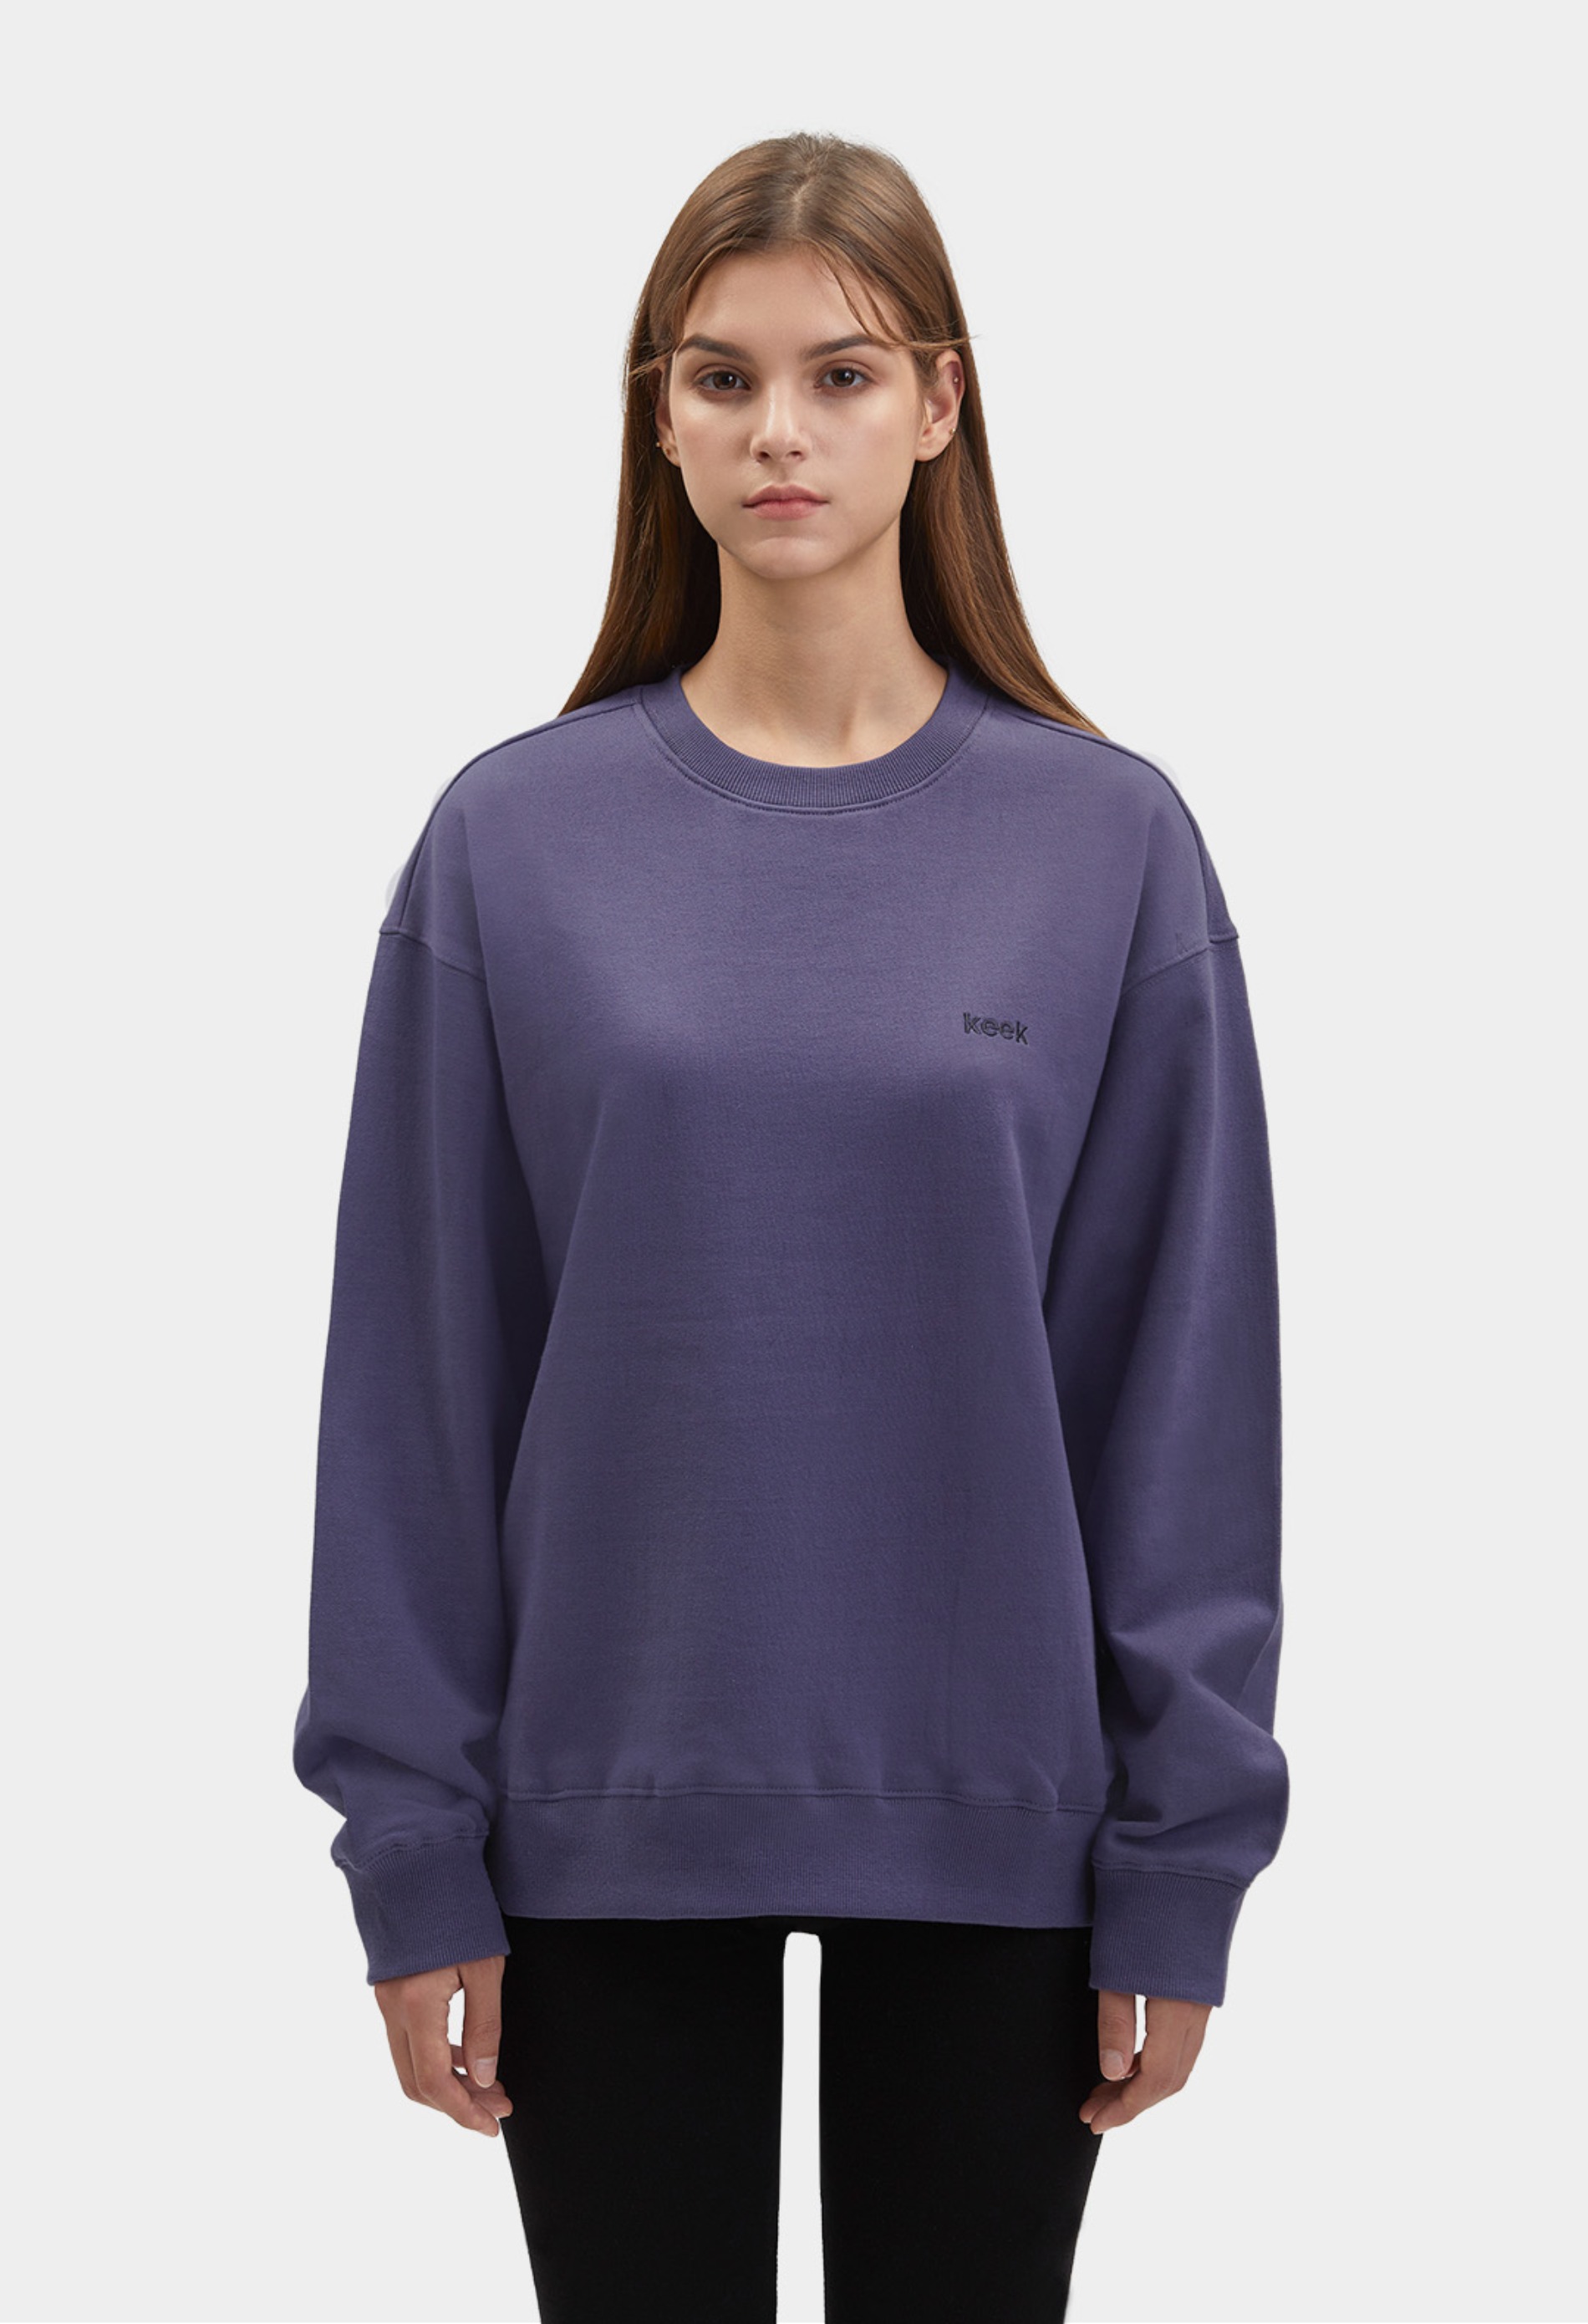 keek [Unisex] keek Sweatshirts - Dark Purple 스트릿패션 유니섹스브랜드 커플시밀러룩 남자쇼핑몰 여성의류쇼핑몰 후드티 힙색